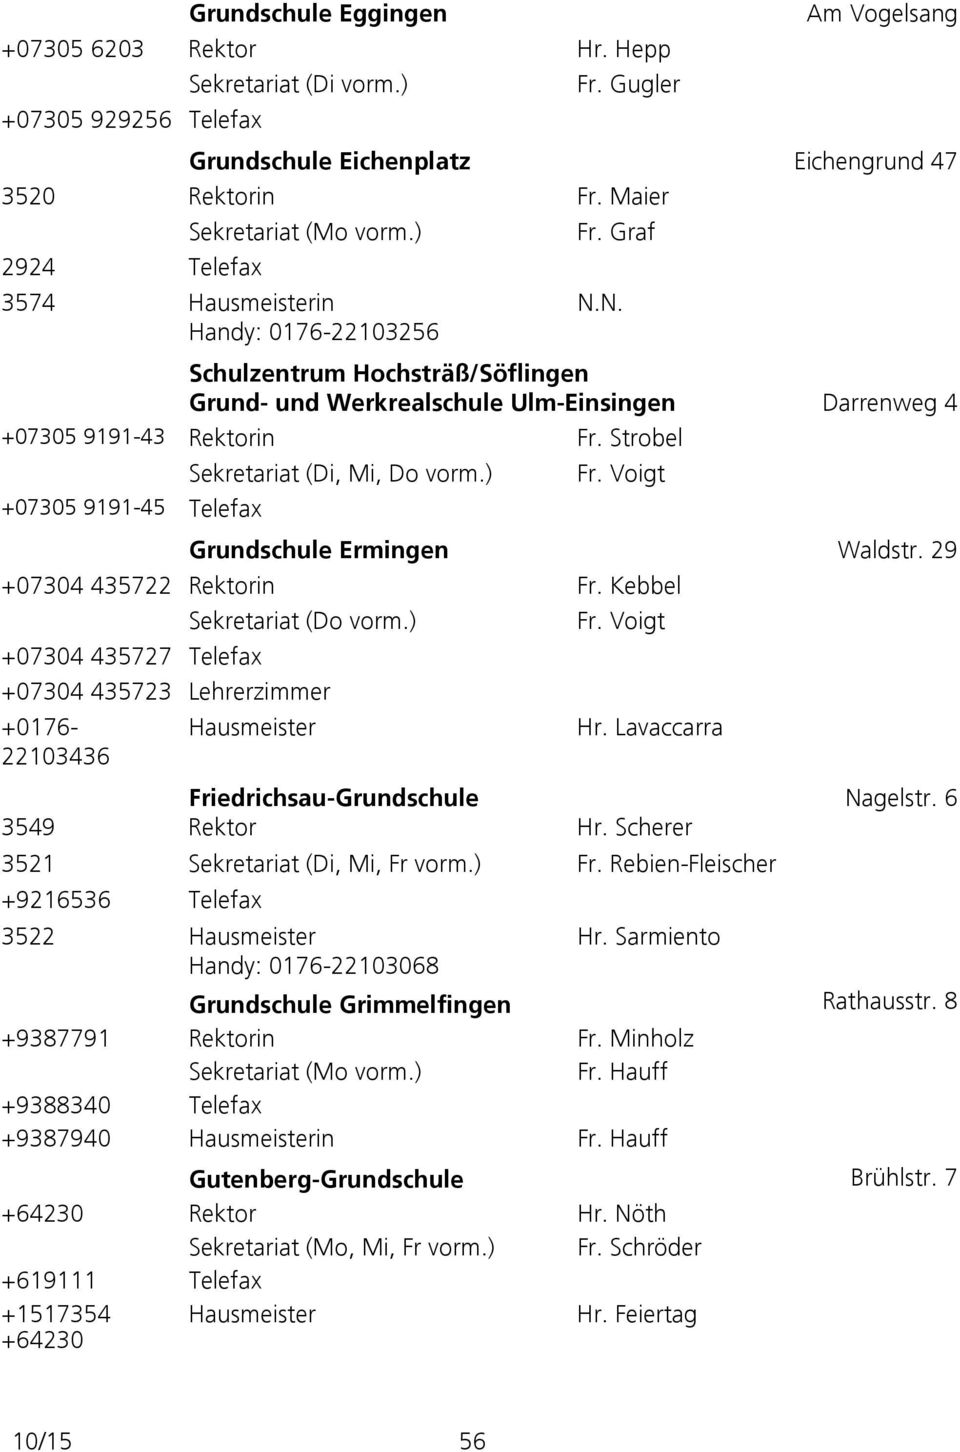 N. Schulzentrum Hochsträß/Söflingen Grund- und Werkrealschule Ulm-Einsingen Darrenweg 4 +07305 9191-43 Rektorin Fr. Strobel +07305 9191-45 Telefax Sekretariat (Di, Mi, Do vorm.) Fr.